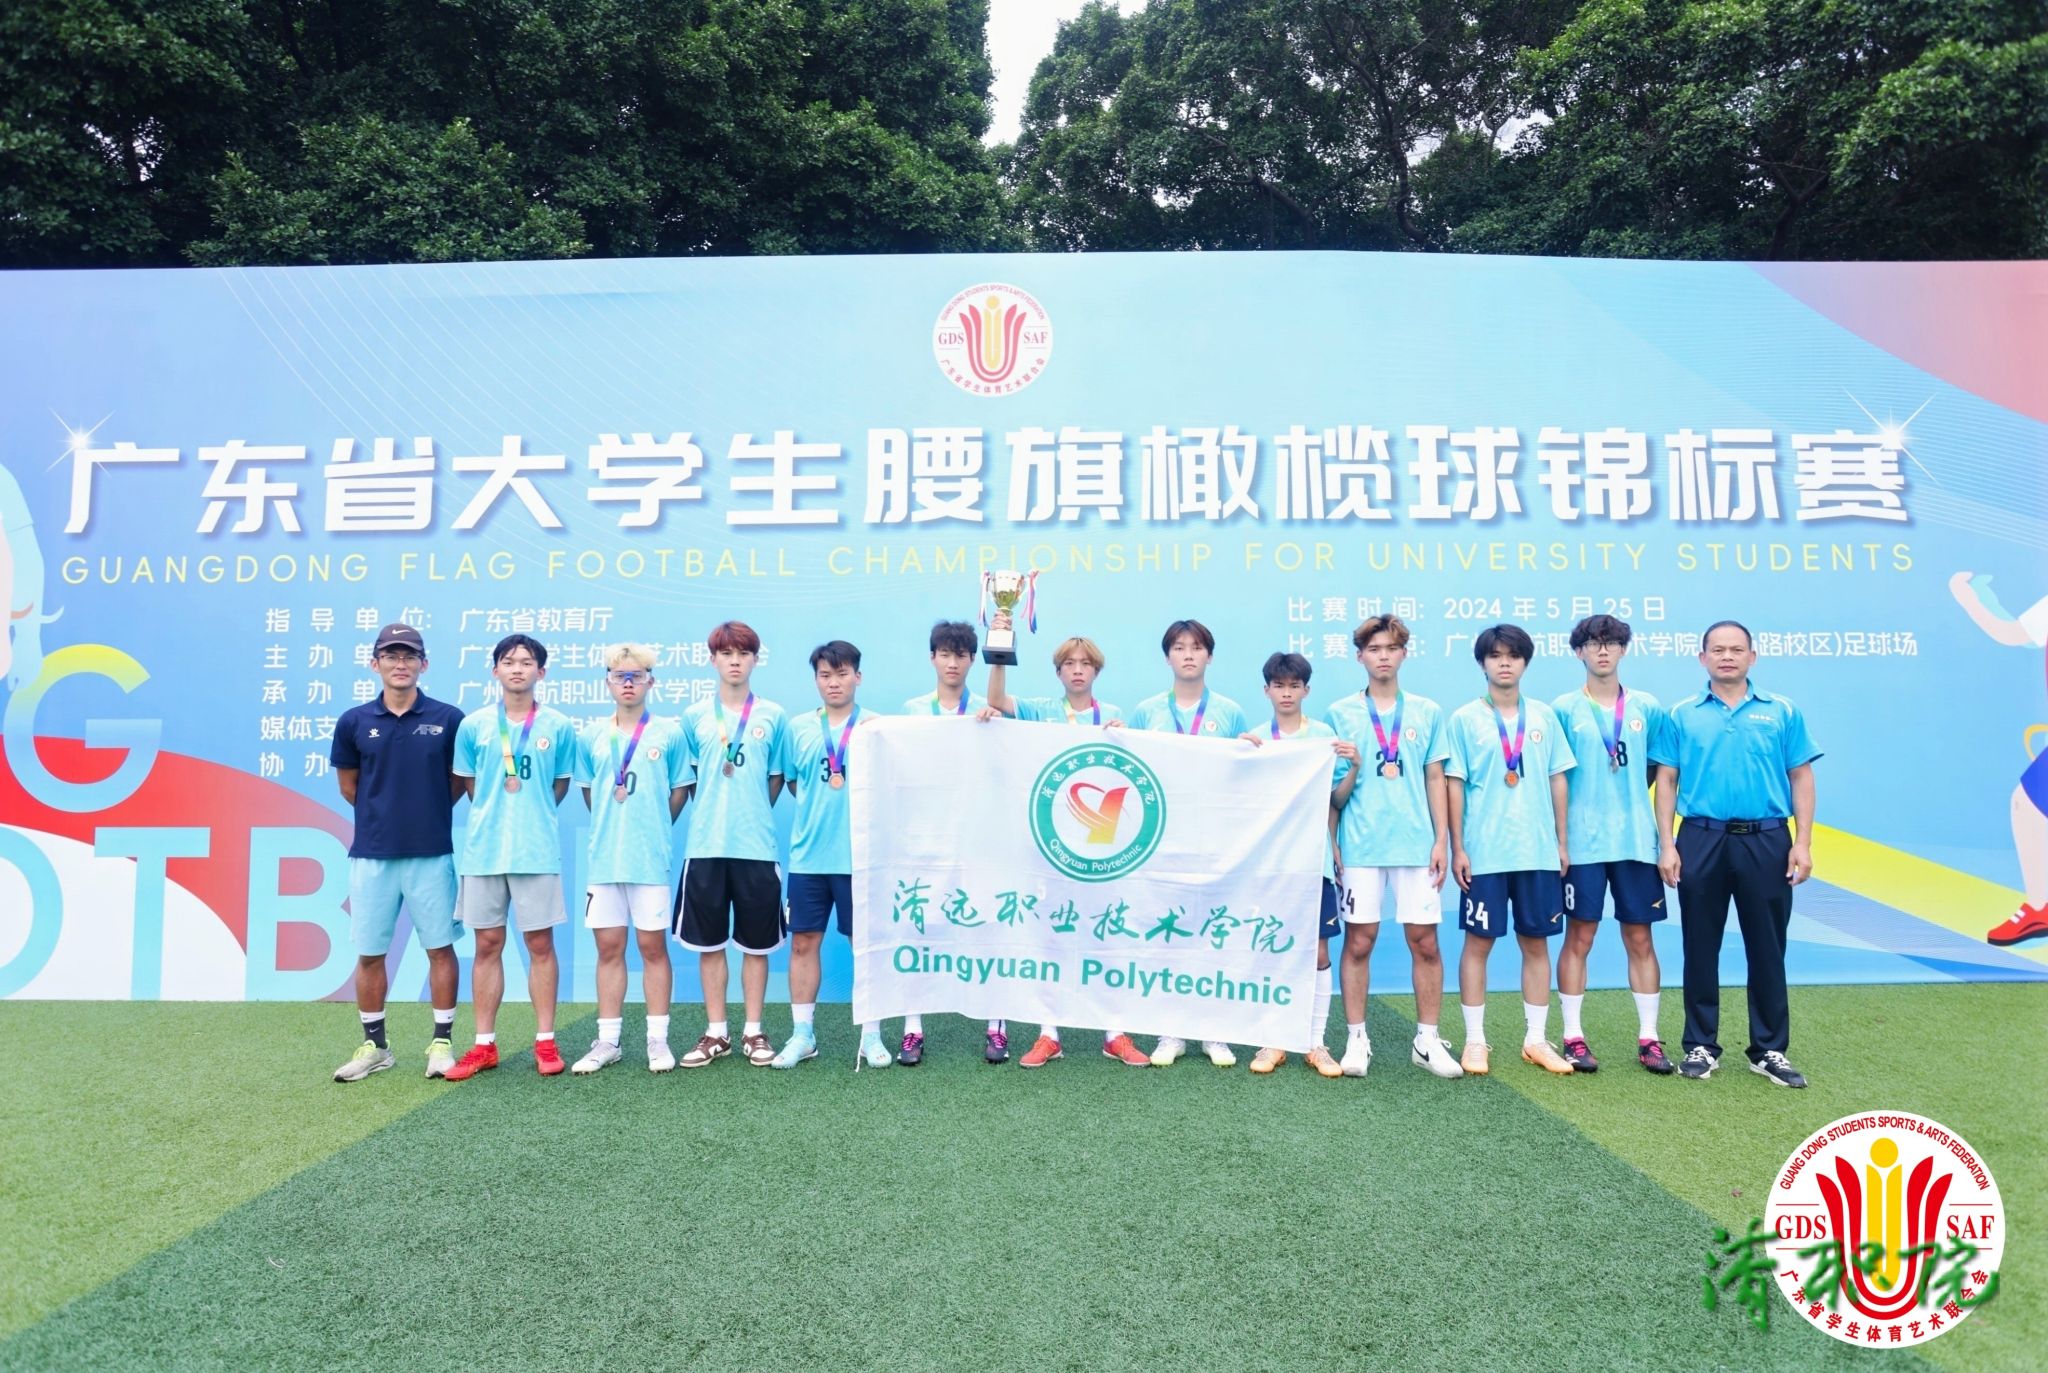 清远职业技术学院男子腰旗橄榄球球队在广东省大学生腰旗橄榄球锦标赛上取得佳绩